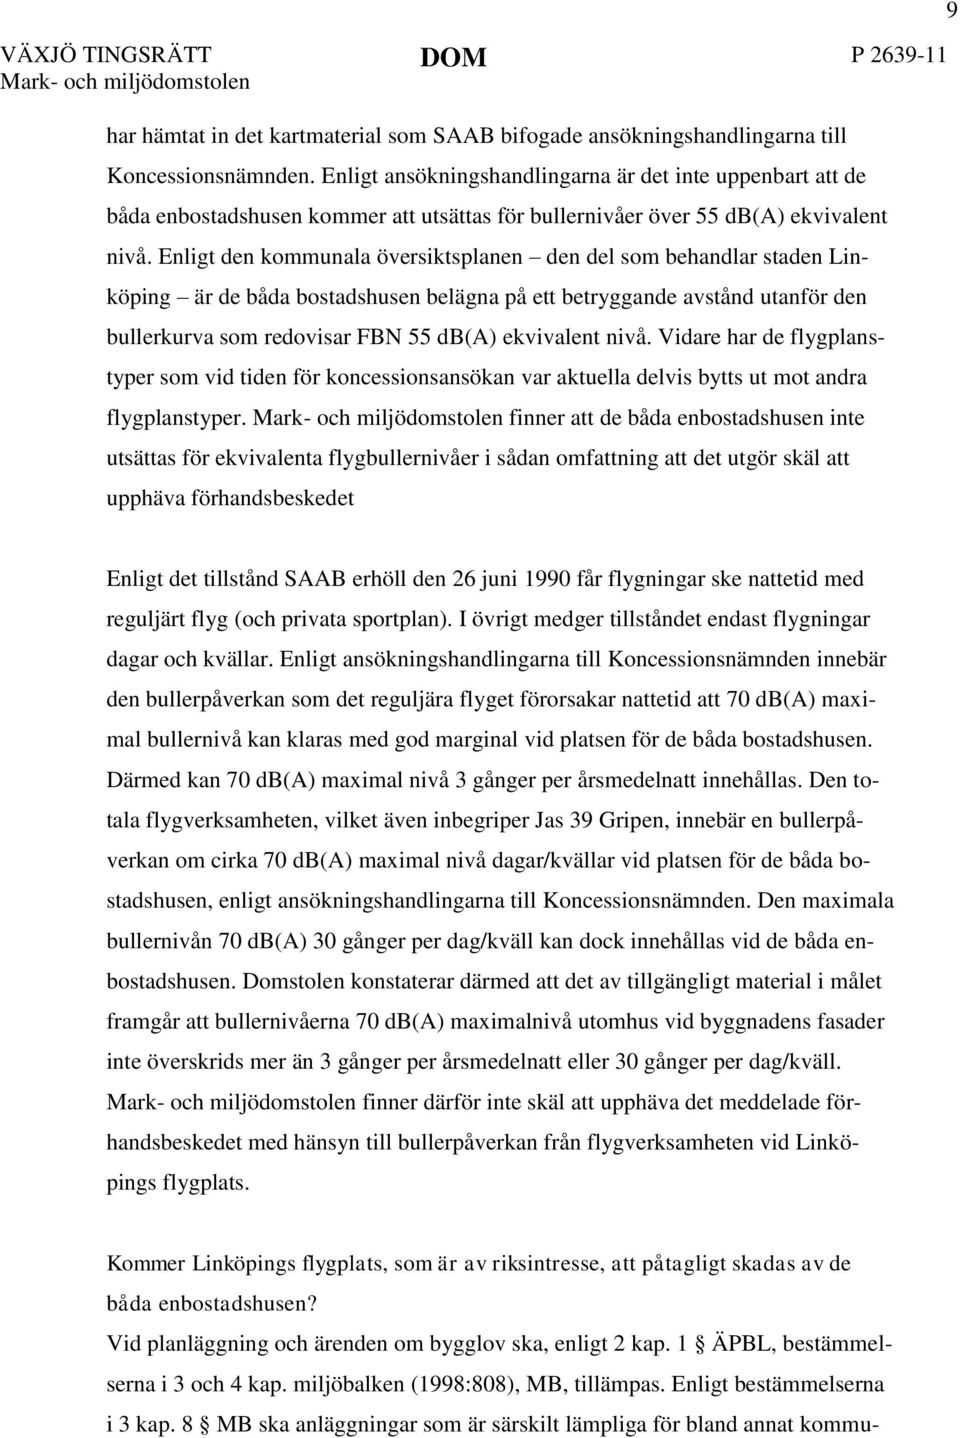 Enligt den kommunala översiktsplanen den del som behandlar staden Linköping är de båda bostadshusen belägna på ett betryggande avstånd utanför den bullerkurva som redovisar FBN 55 db(a) ekvivalent